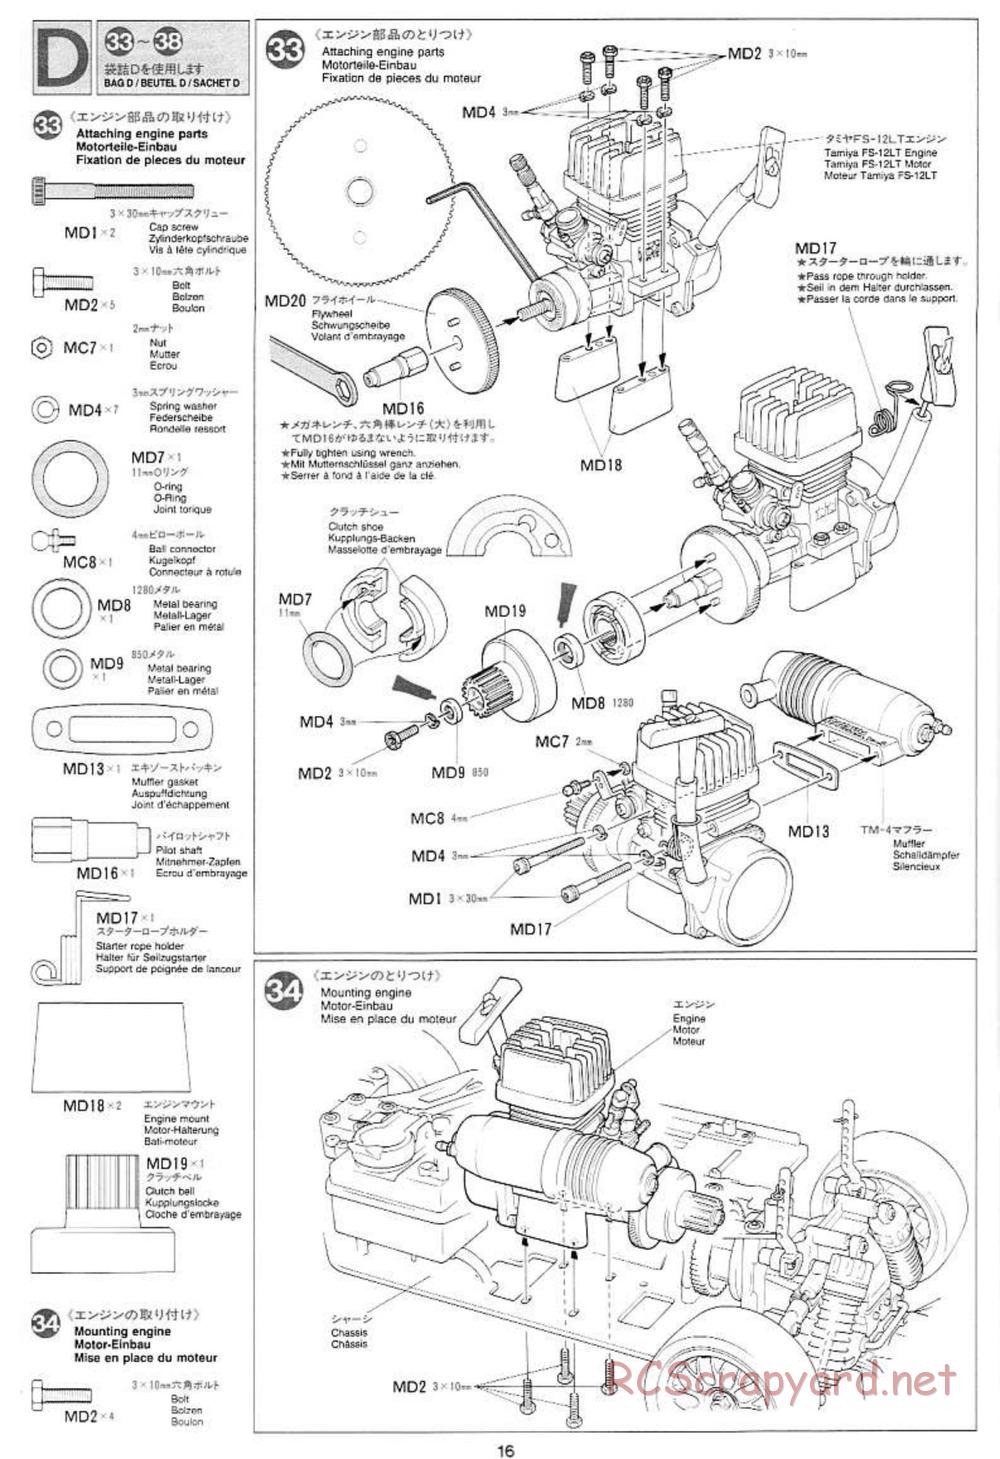 Tamiya - Mercedes CLK GTR Team Sportswear - TG10 Mk.1 Chassis - Manual - Page 16